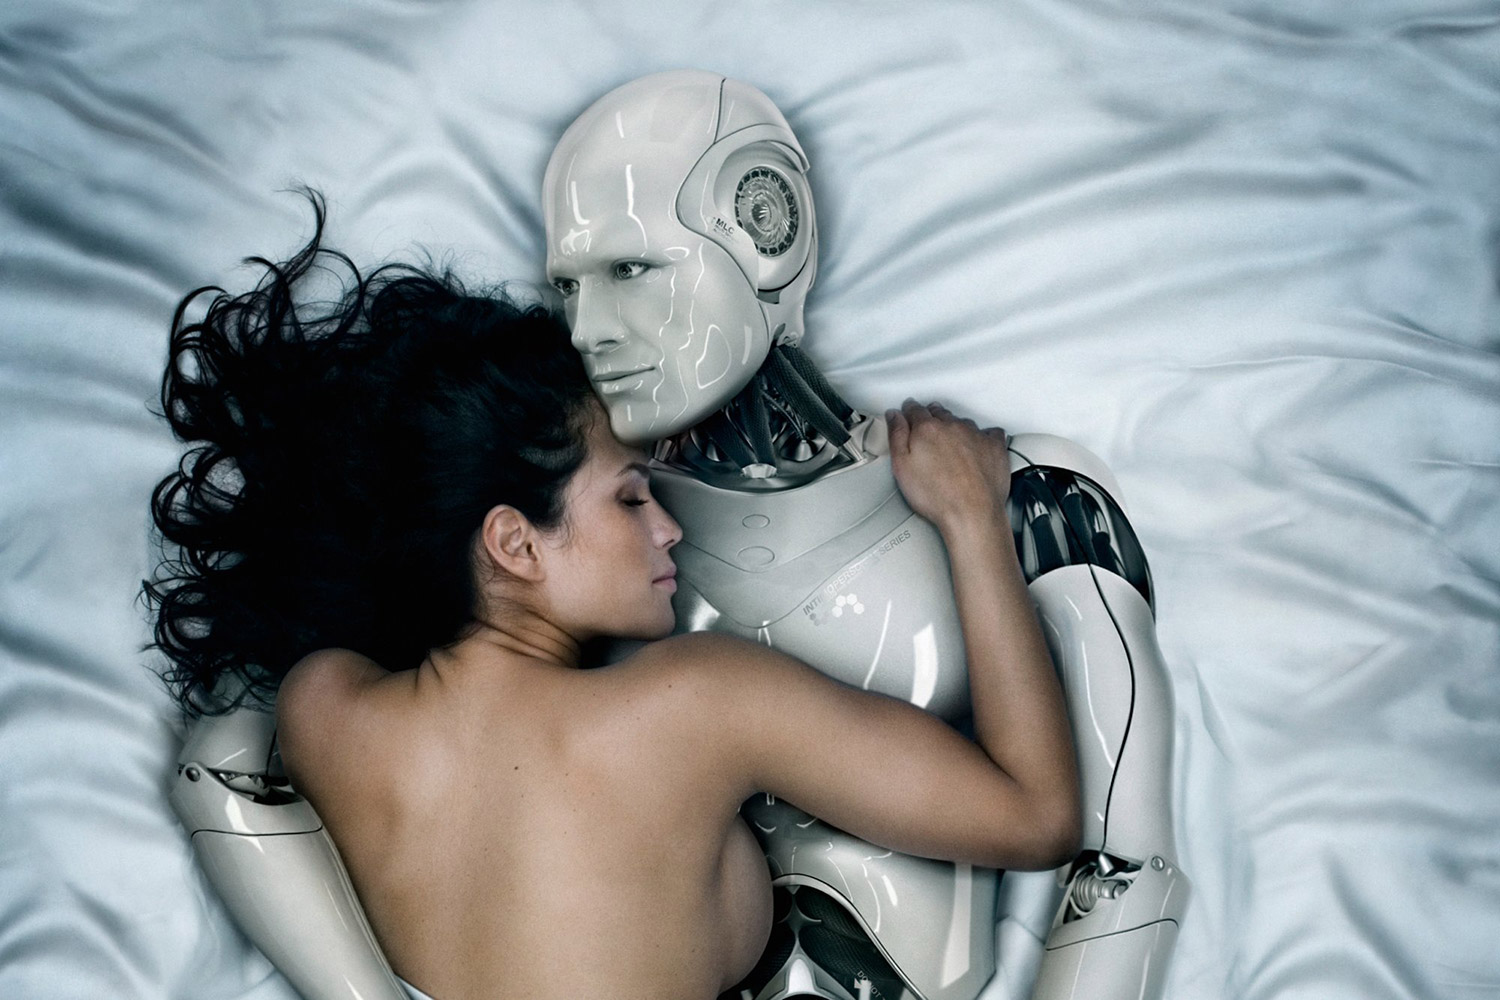 Women Having Sex With A Robot attendant upskirt